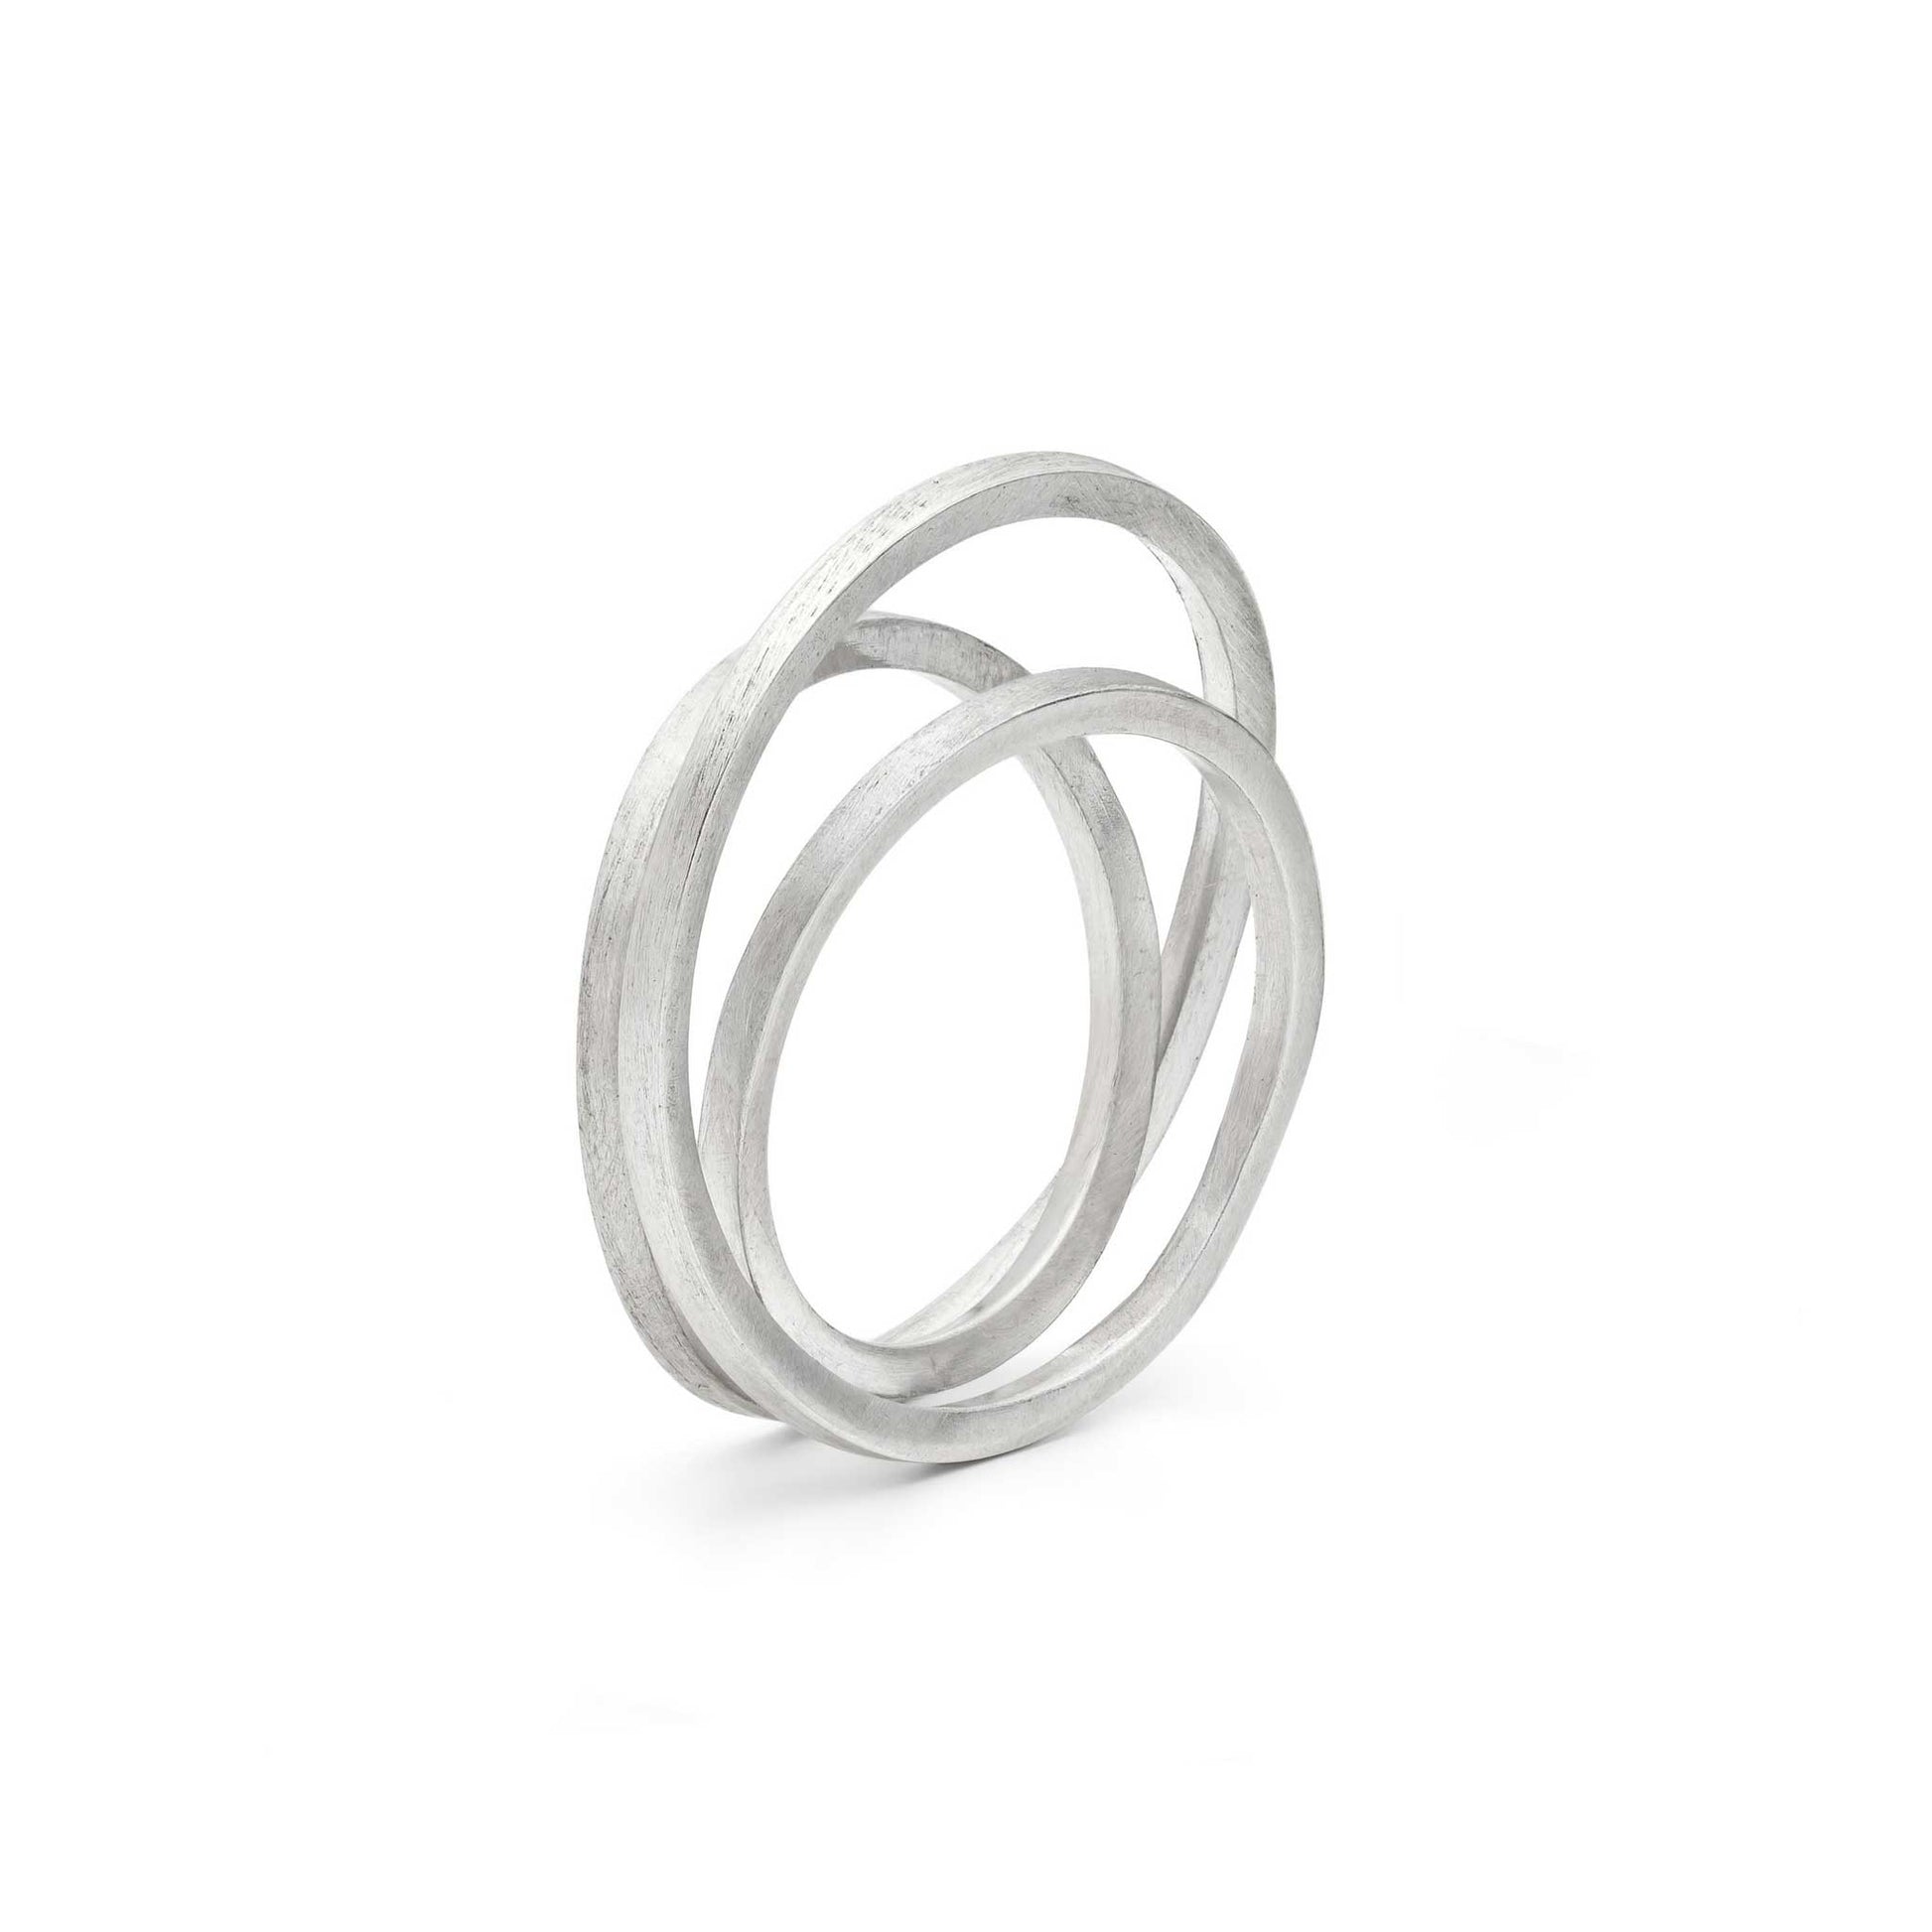 Loop D Loop Ring 1.5mm